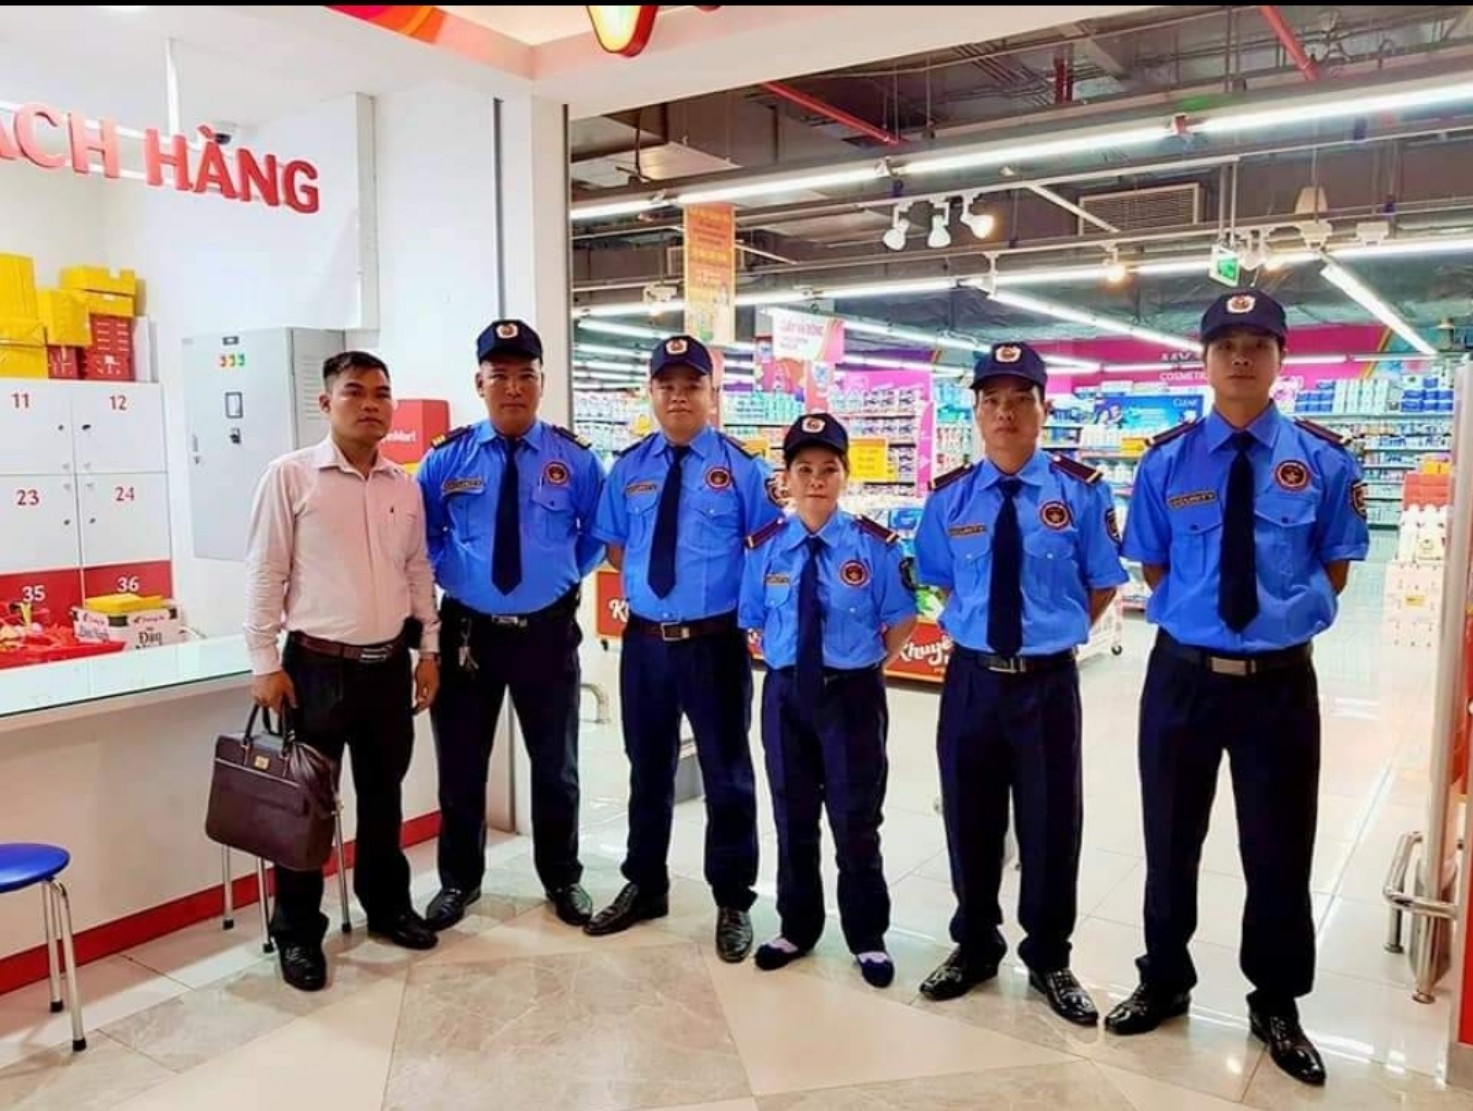 Dịch vụ bảo vệ tại Đà Nẵng và những thông tin hữu ích khác